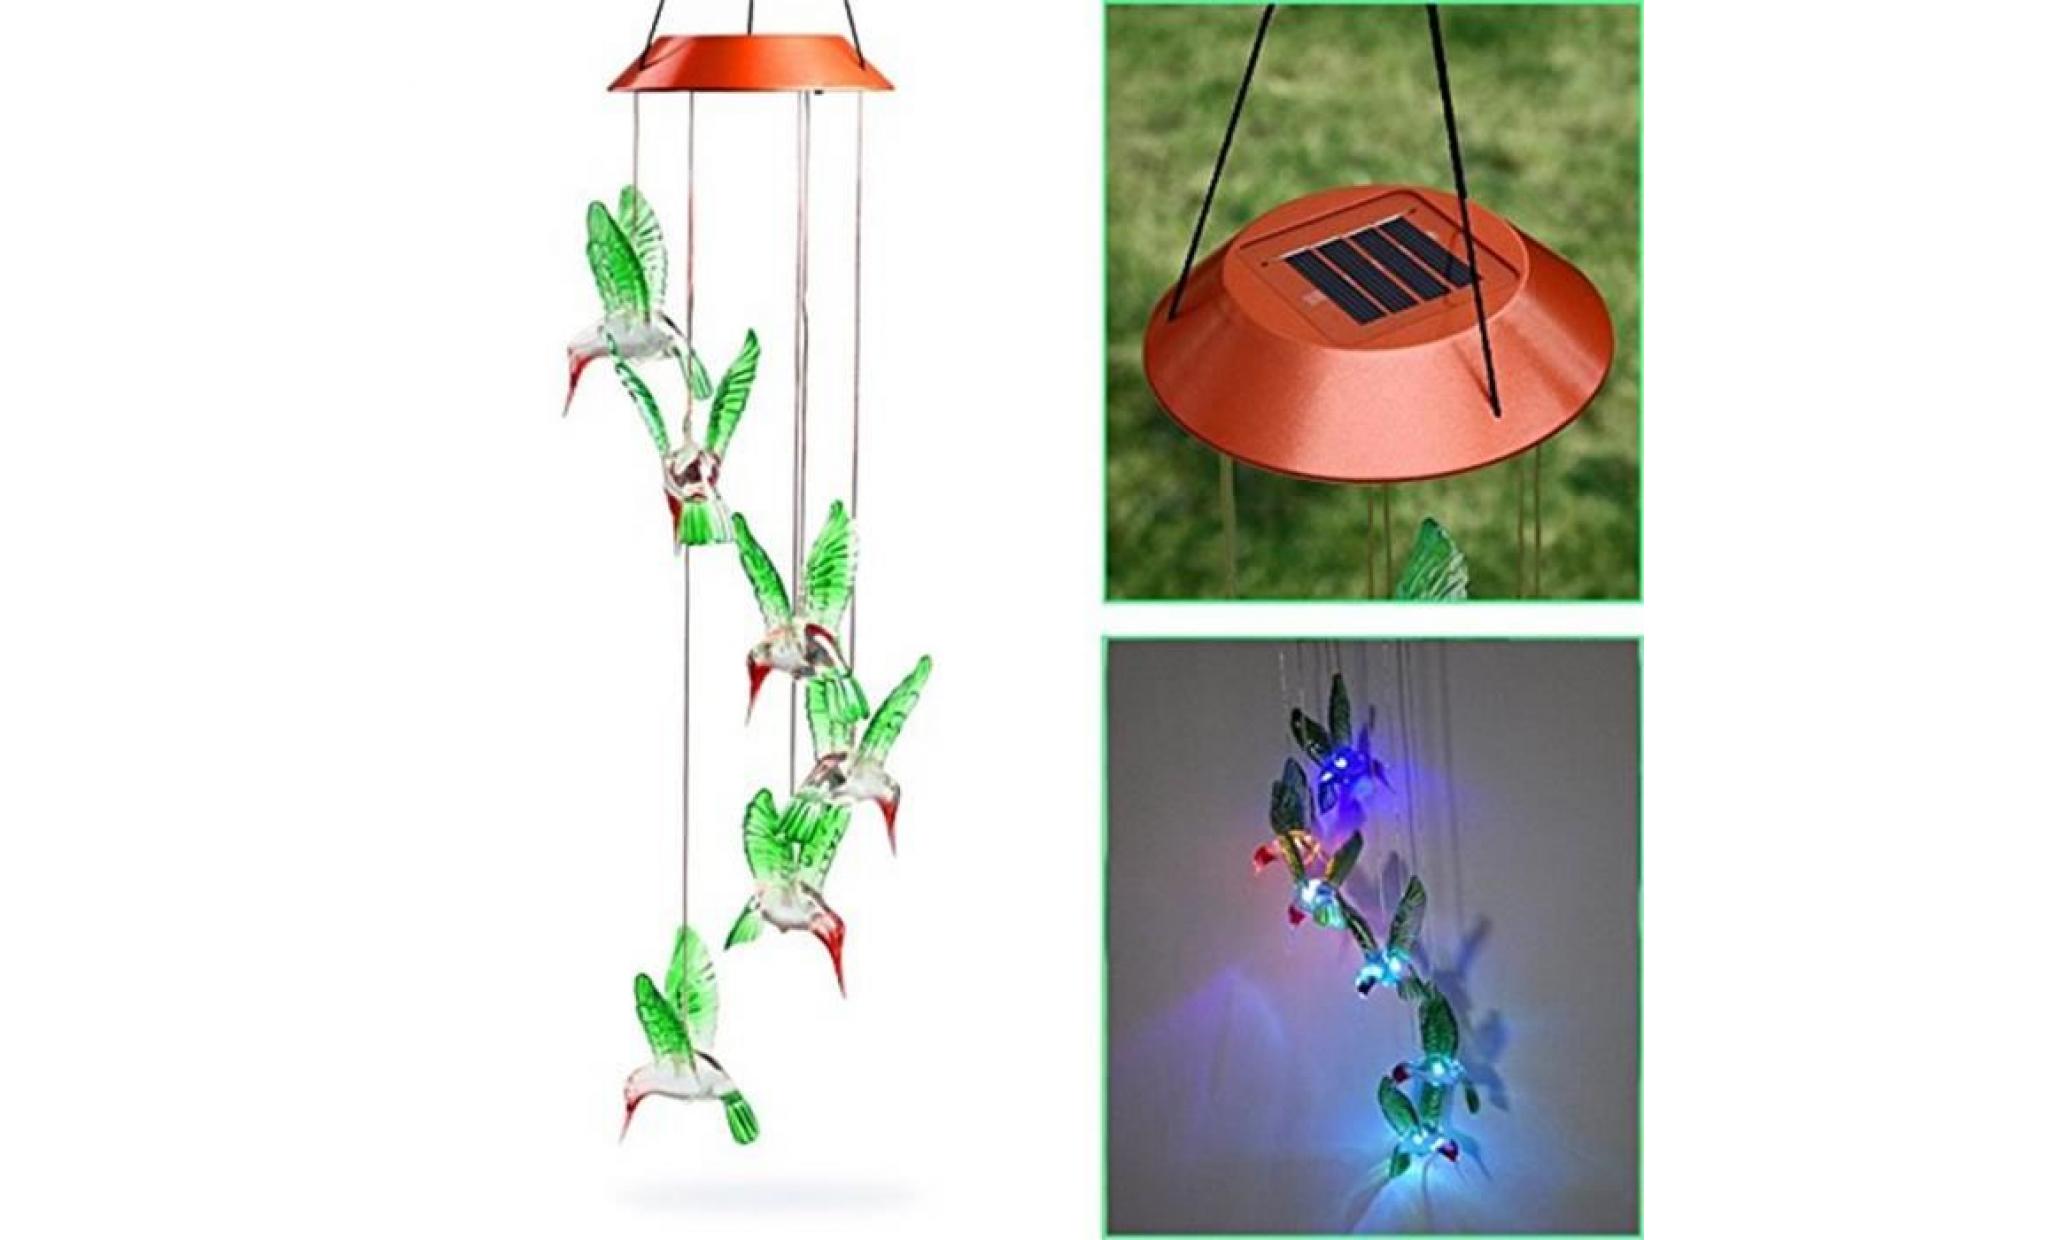 couleur changeant le vent solaire de colibri de carillon de vent de led pour l'éclairage de jardinage@pansy1425